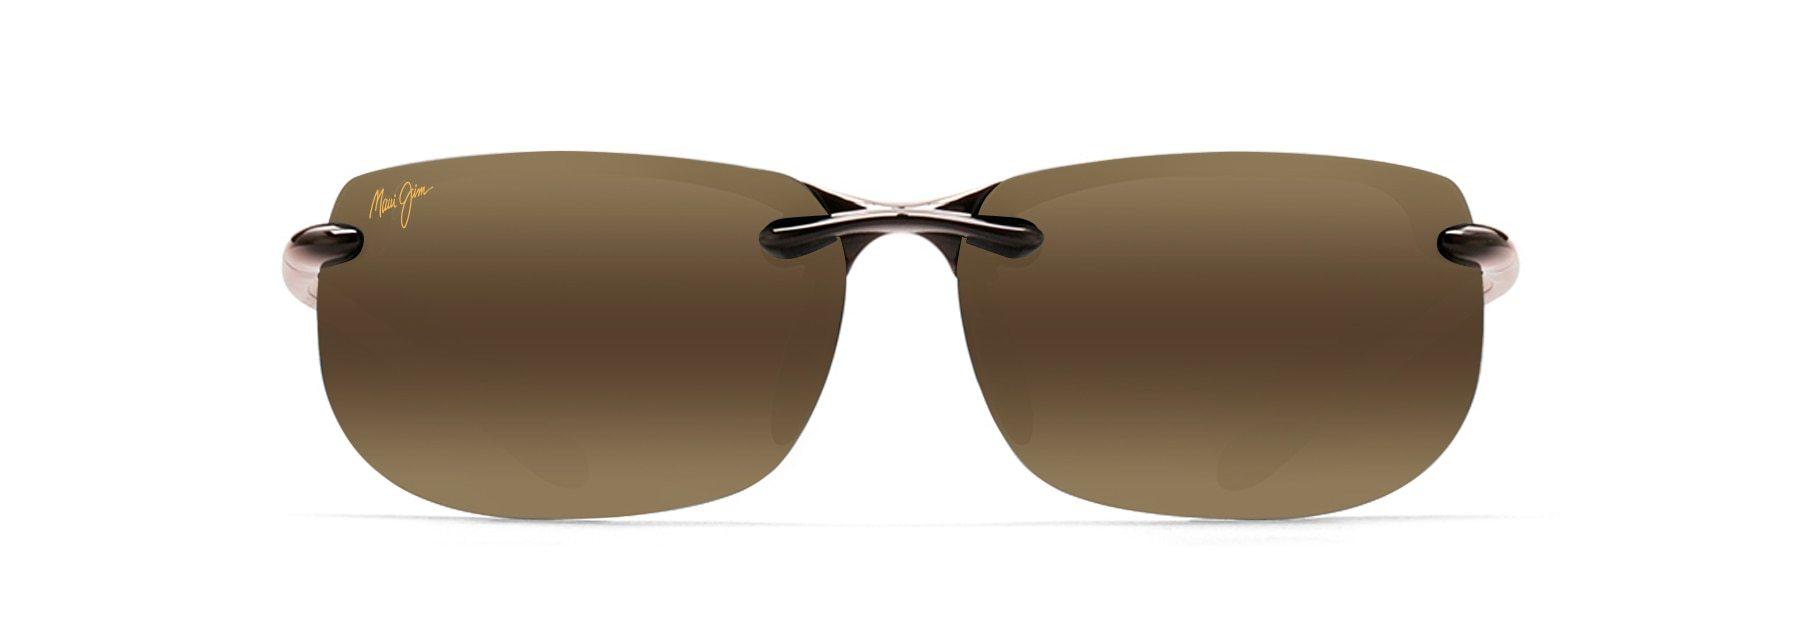 MyMaui Banyans MM412-001 Sunglasses